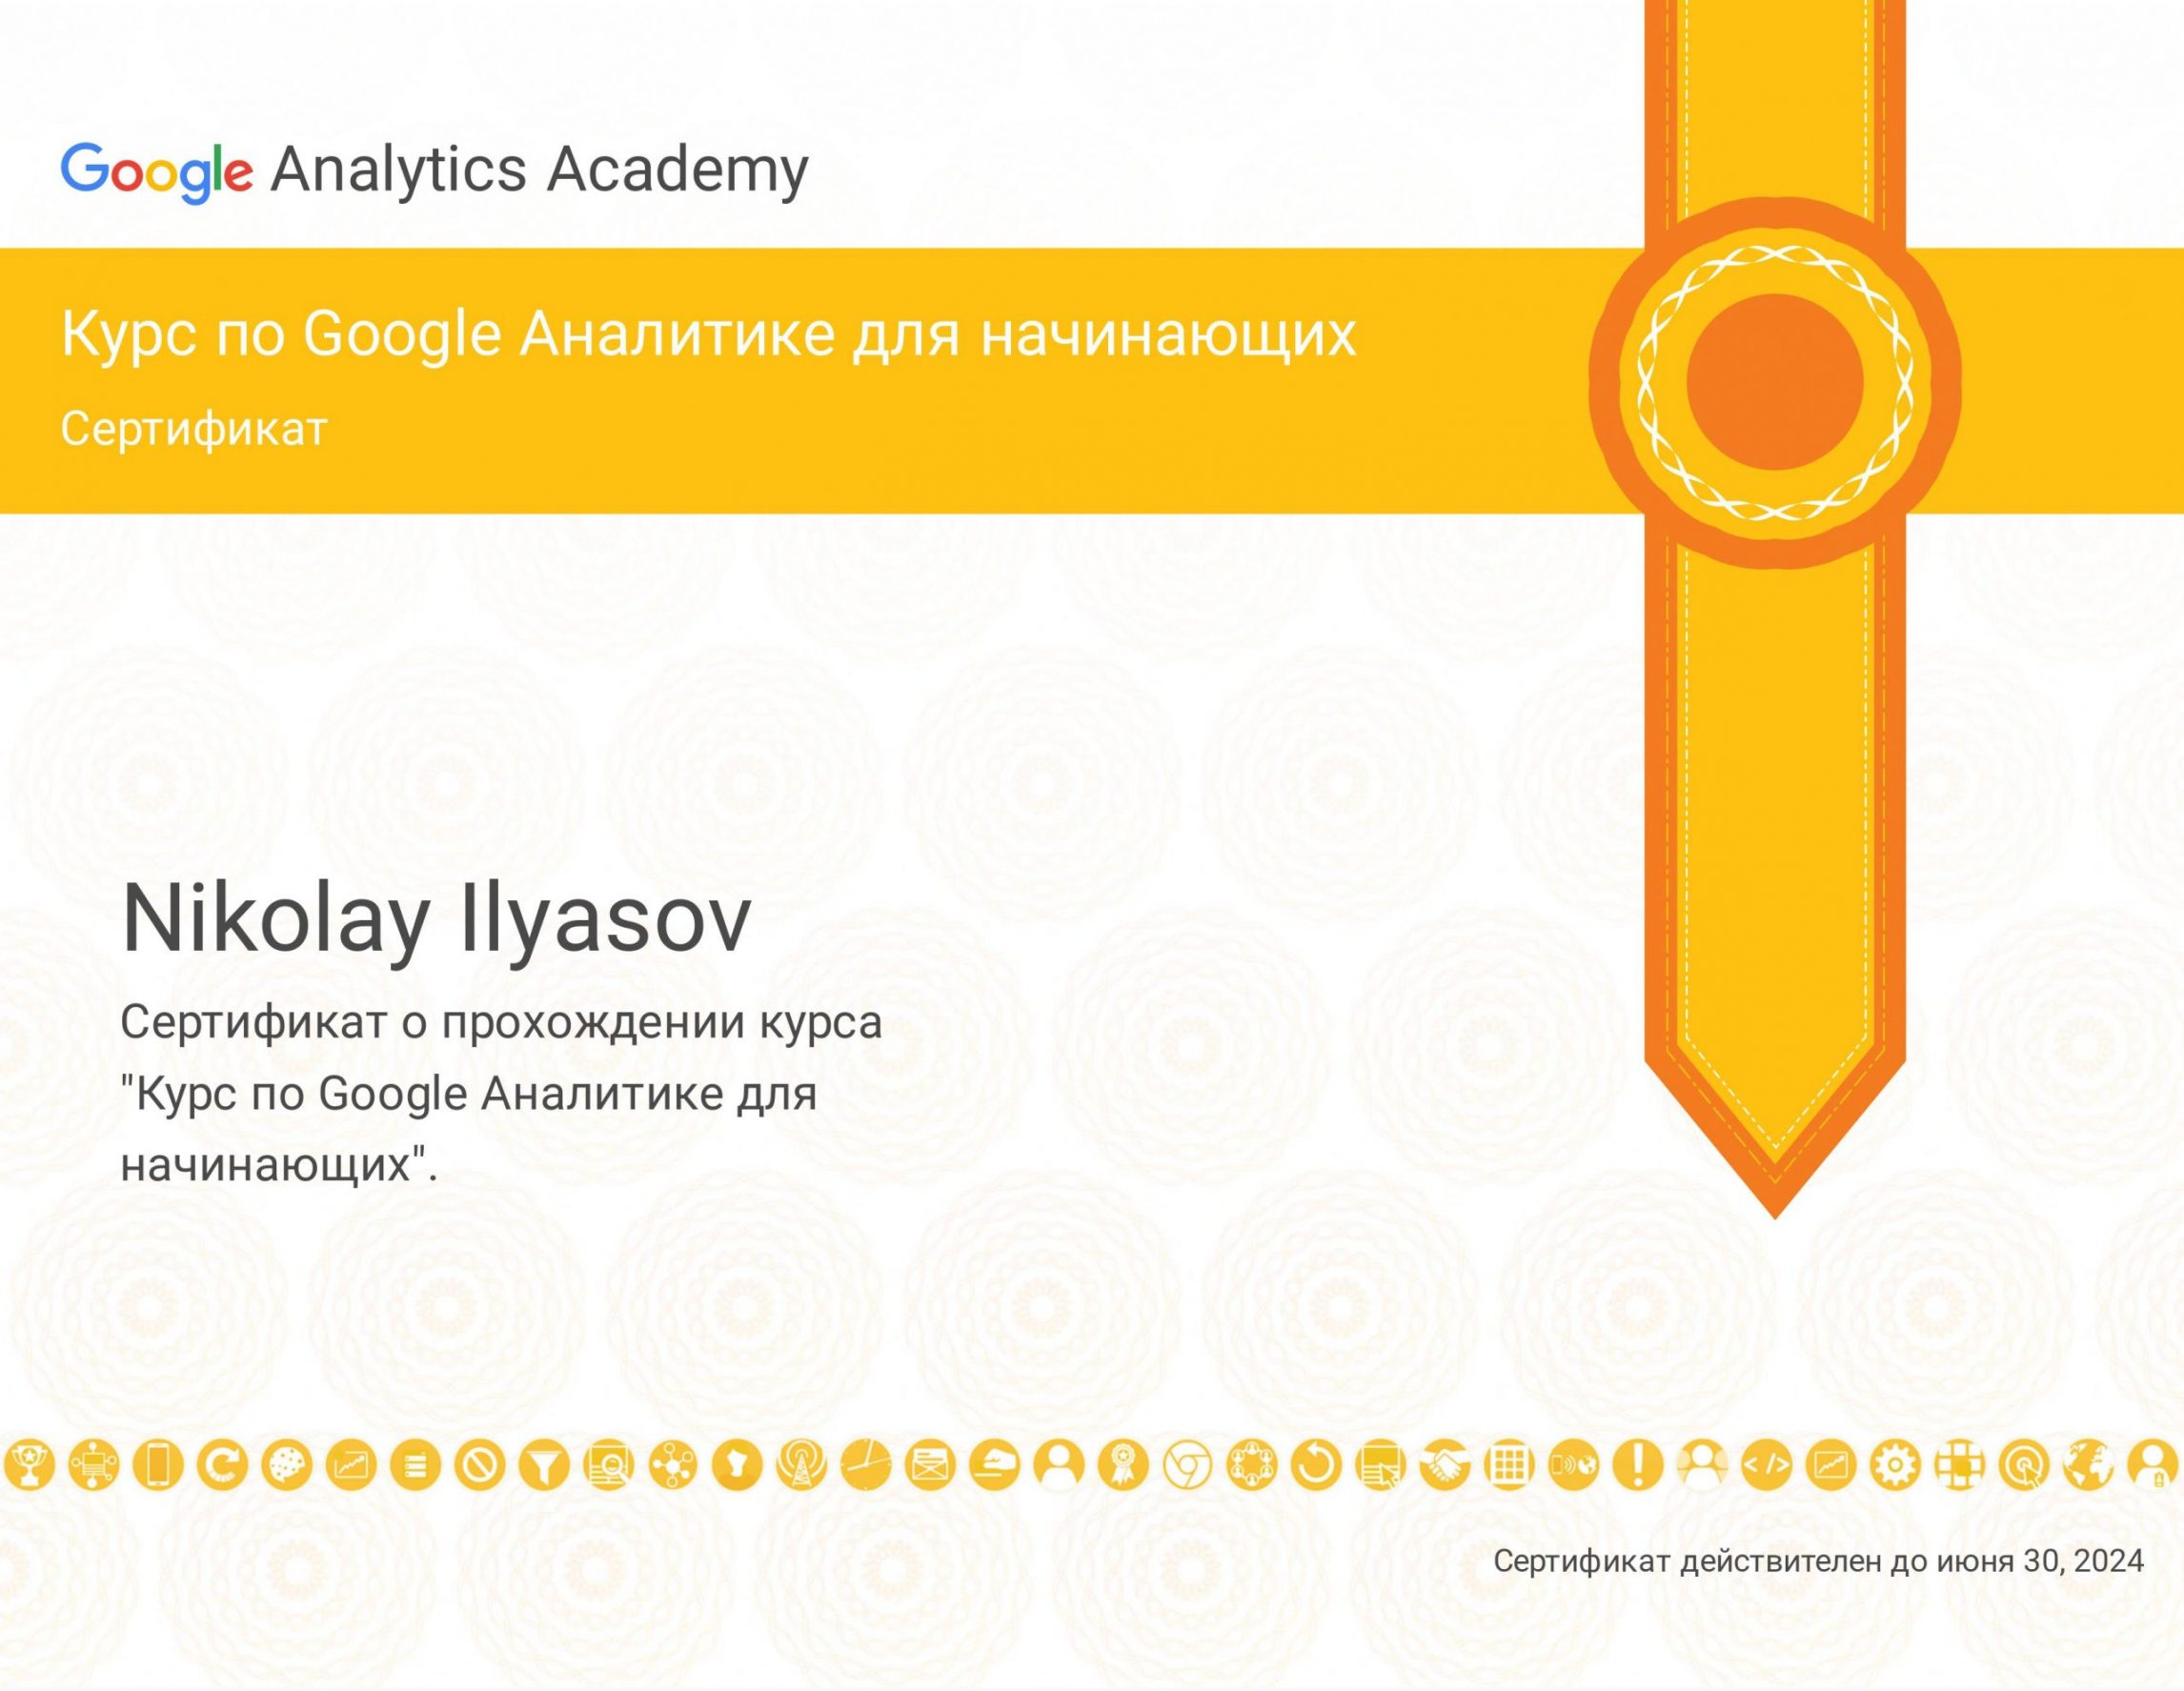 Ильясов Николай - сертификат